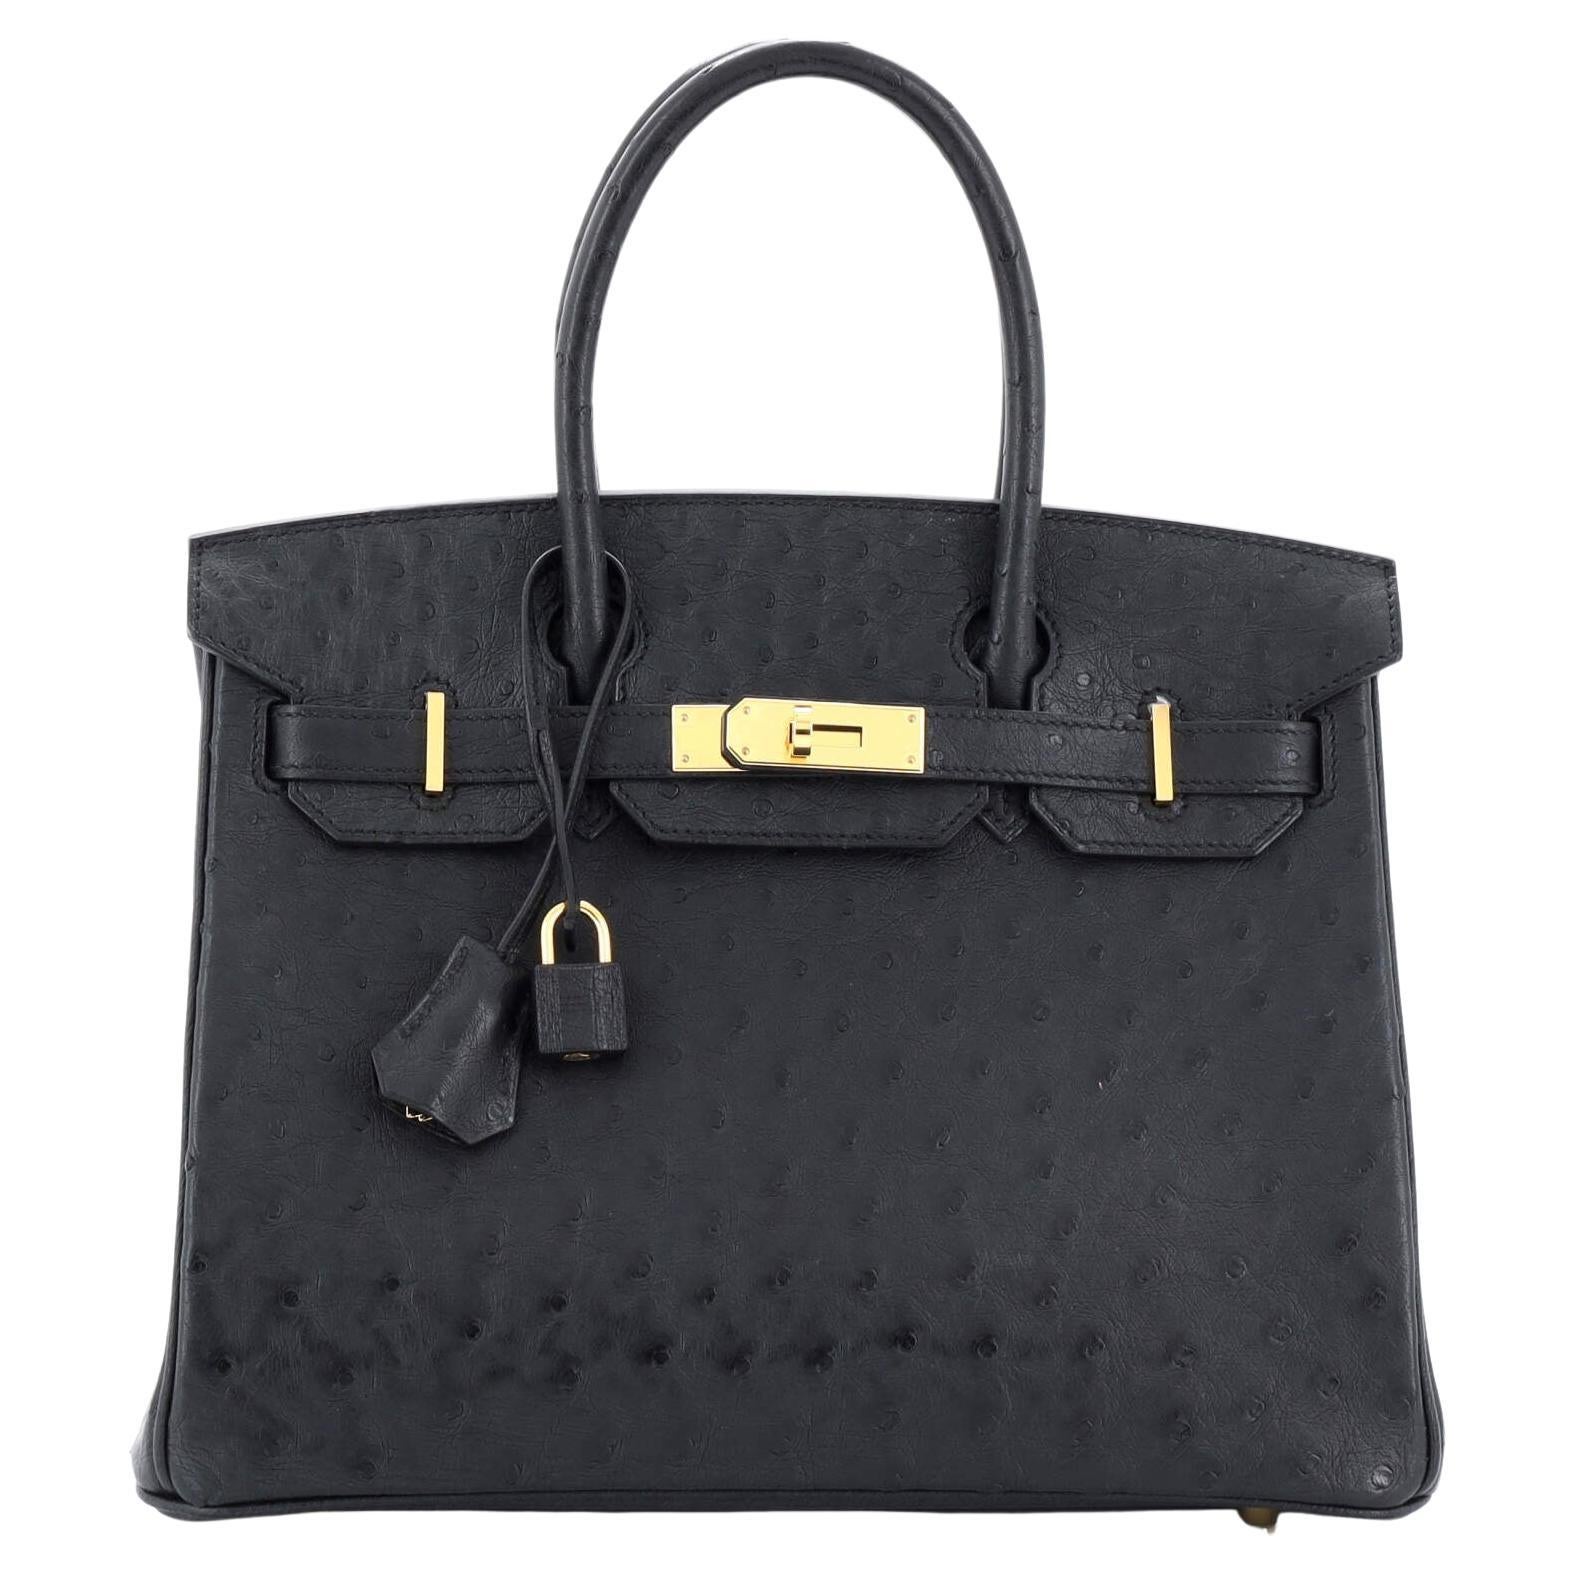 Hermes Birkin Handbag Noir Ostrich with Gold Hardware 30